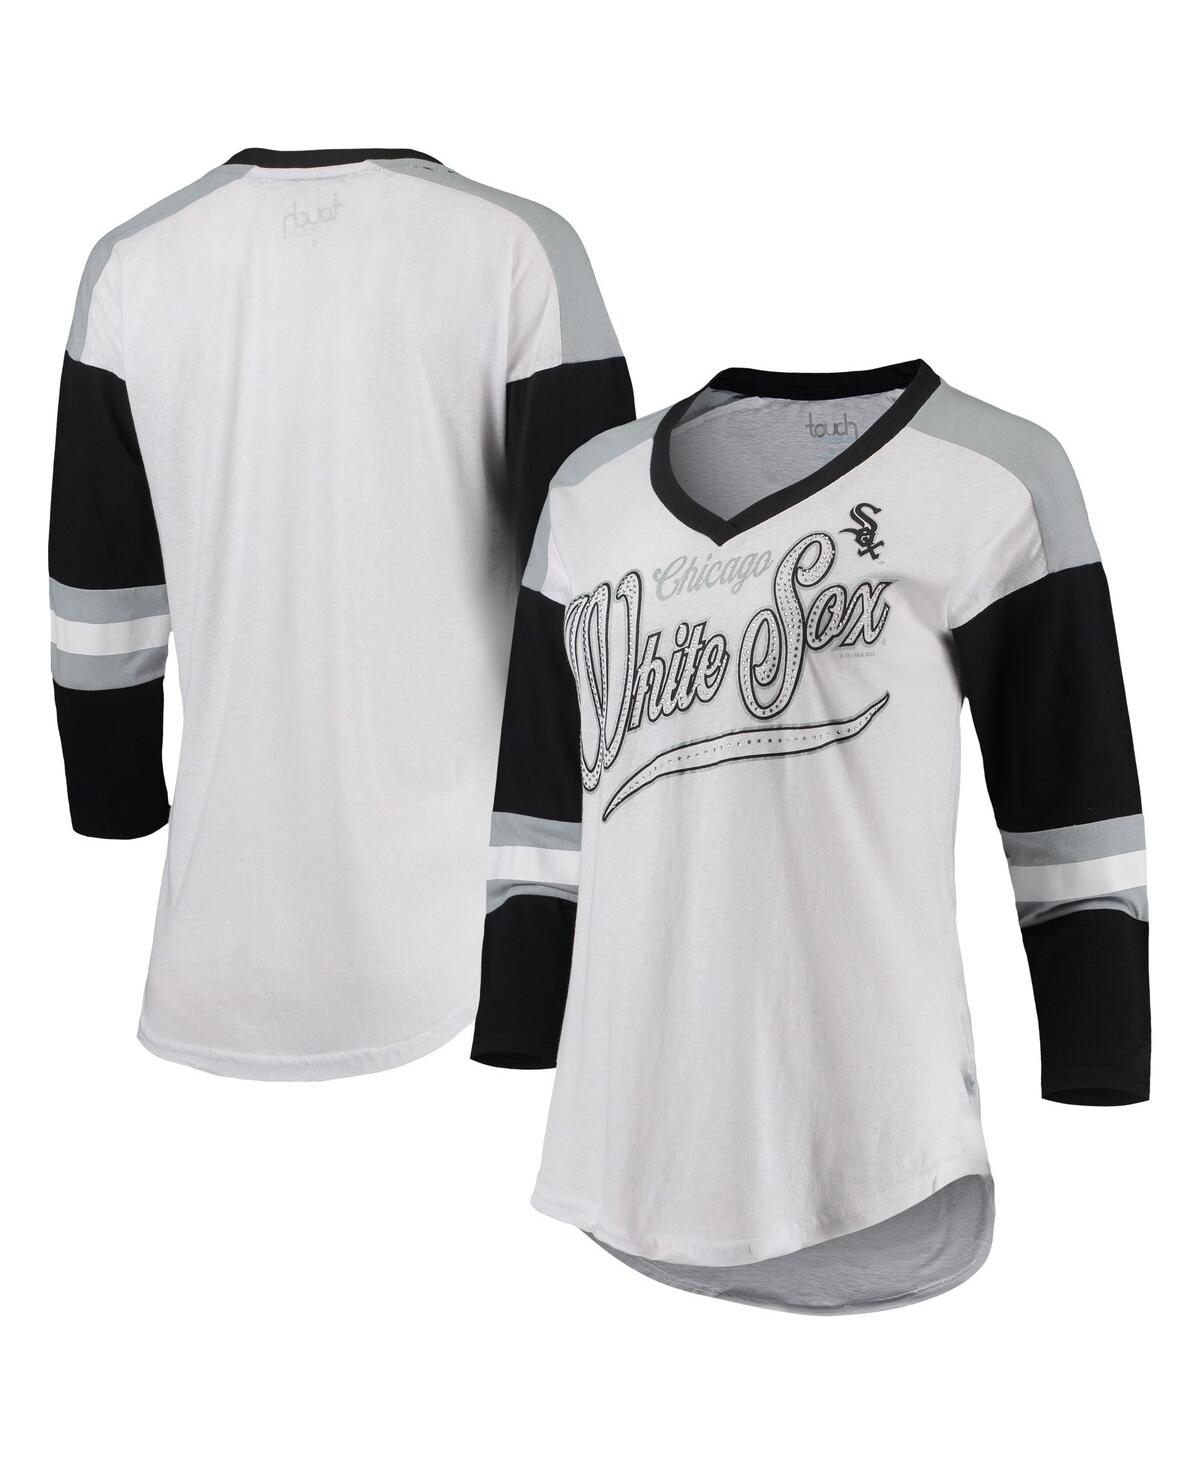 Women's Touch White and Black Chicago White Sox Base Runner 3/4-Sleeve V-Neck T-shirt - White, Black